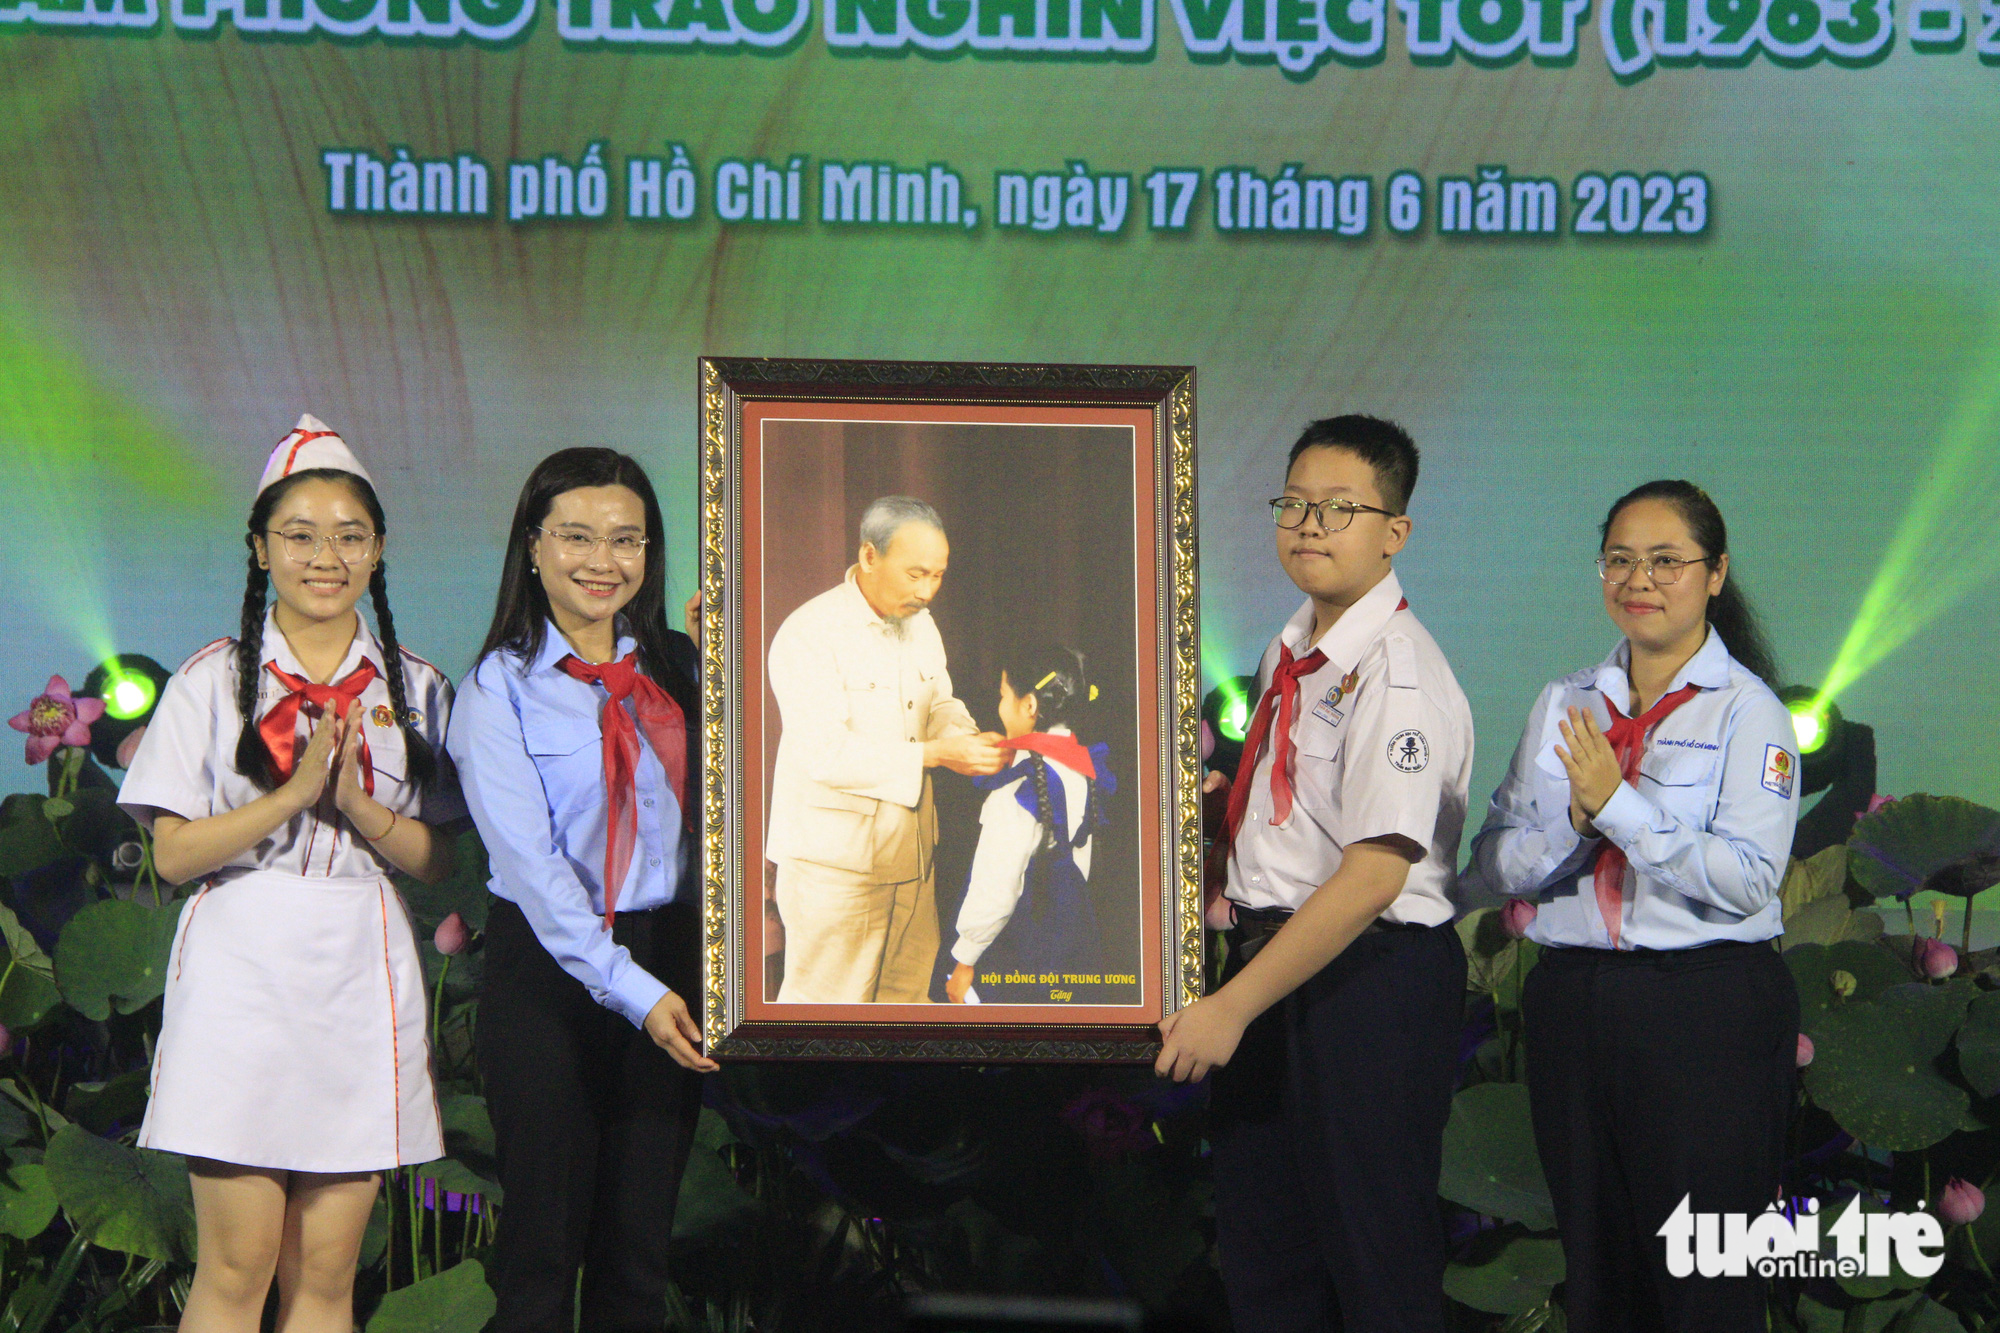 Chị Nguyễn Phạm Duy Trang - bí thư Ban chấp hành Trung ương Đoàn, chủ tịch Hội đồng Đội Trung ương (thứ hai, trái sang) tặng quà cho Hội đồng Đội TP.HCM - Ảnh: CÔNG TRIỆU